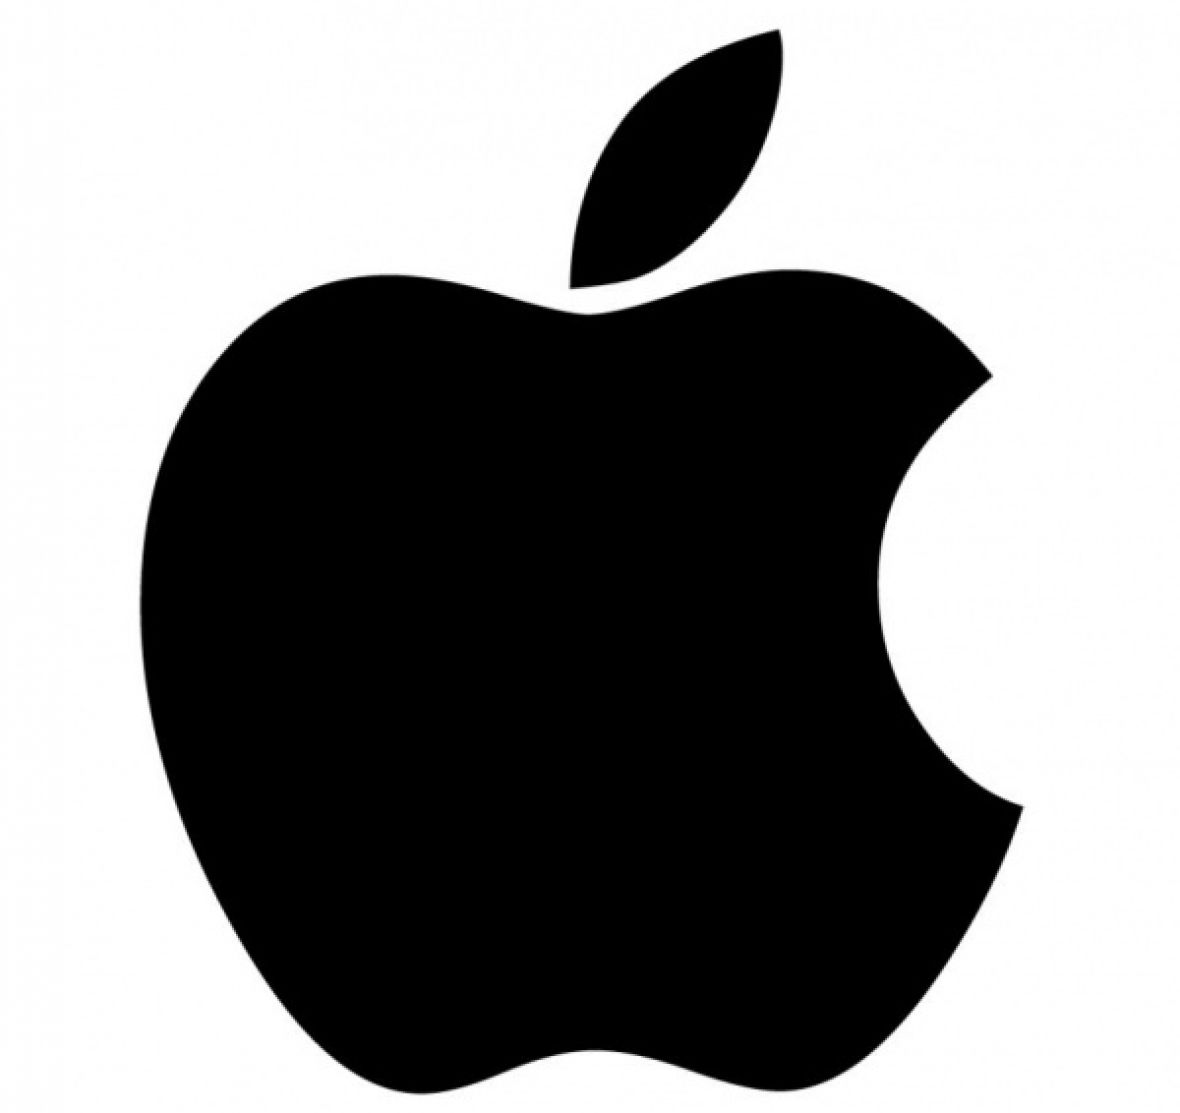 Trenutni logo je modernizirana verzija jabuke koja je pala na glavu Isaaca Newtona (prva verzija logotipa imala je čak i Newtona koji sjedi ispod drveta). Međutim, mnogi su zaključila da iza logotipa postoji niz teorija. - undefined